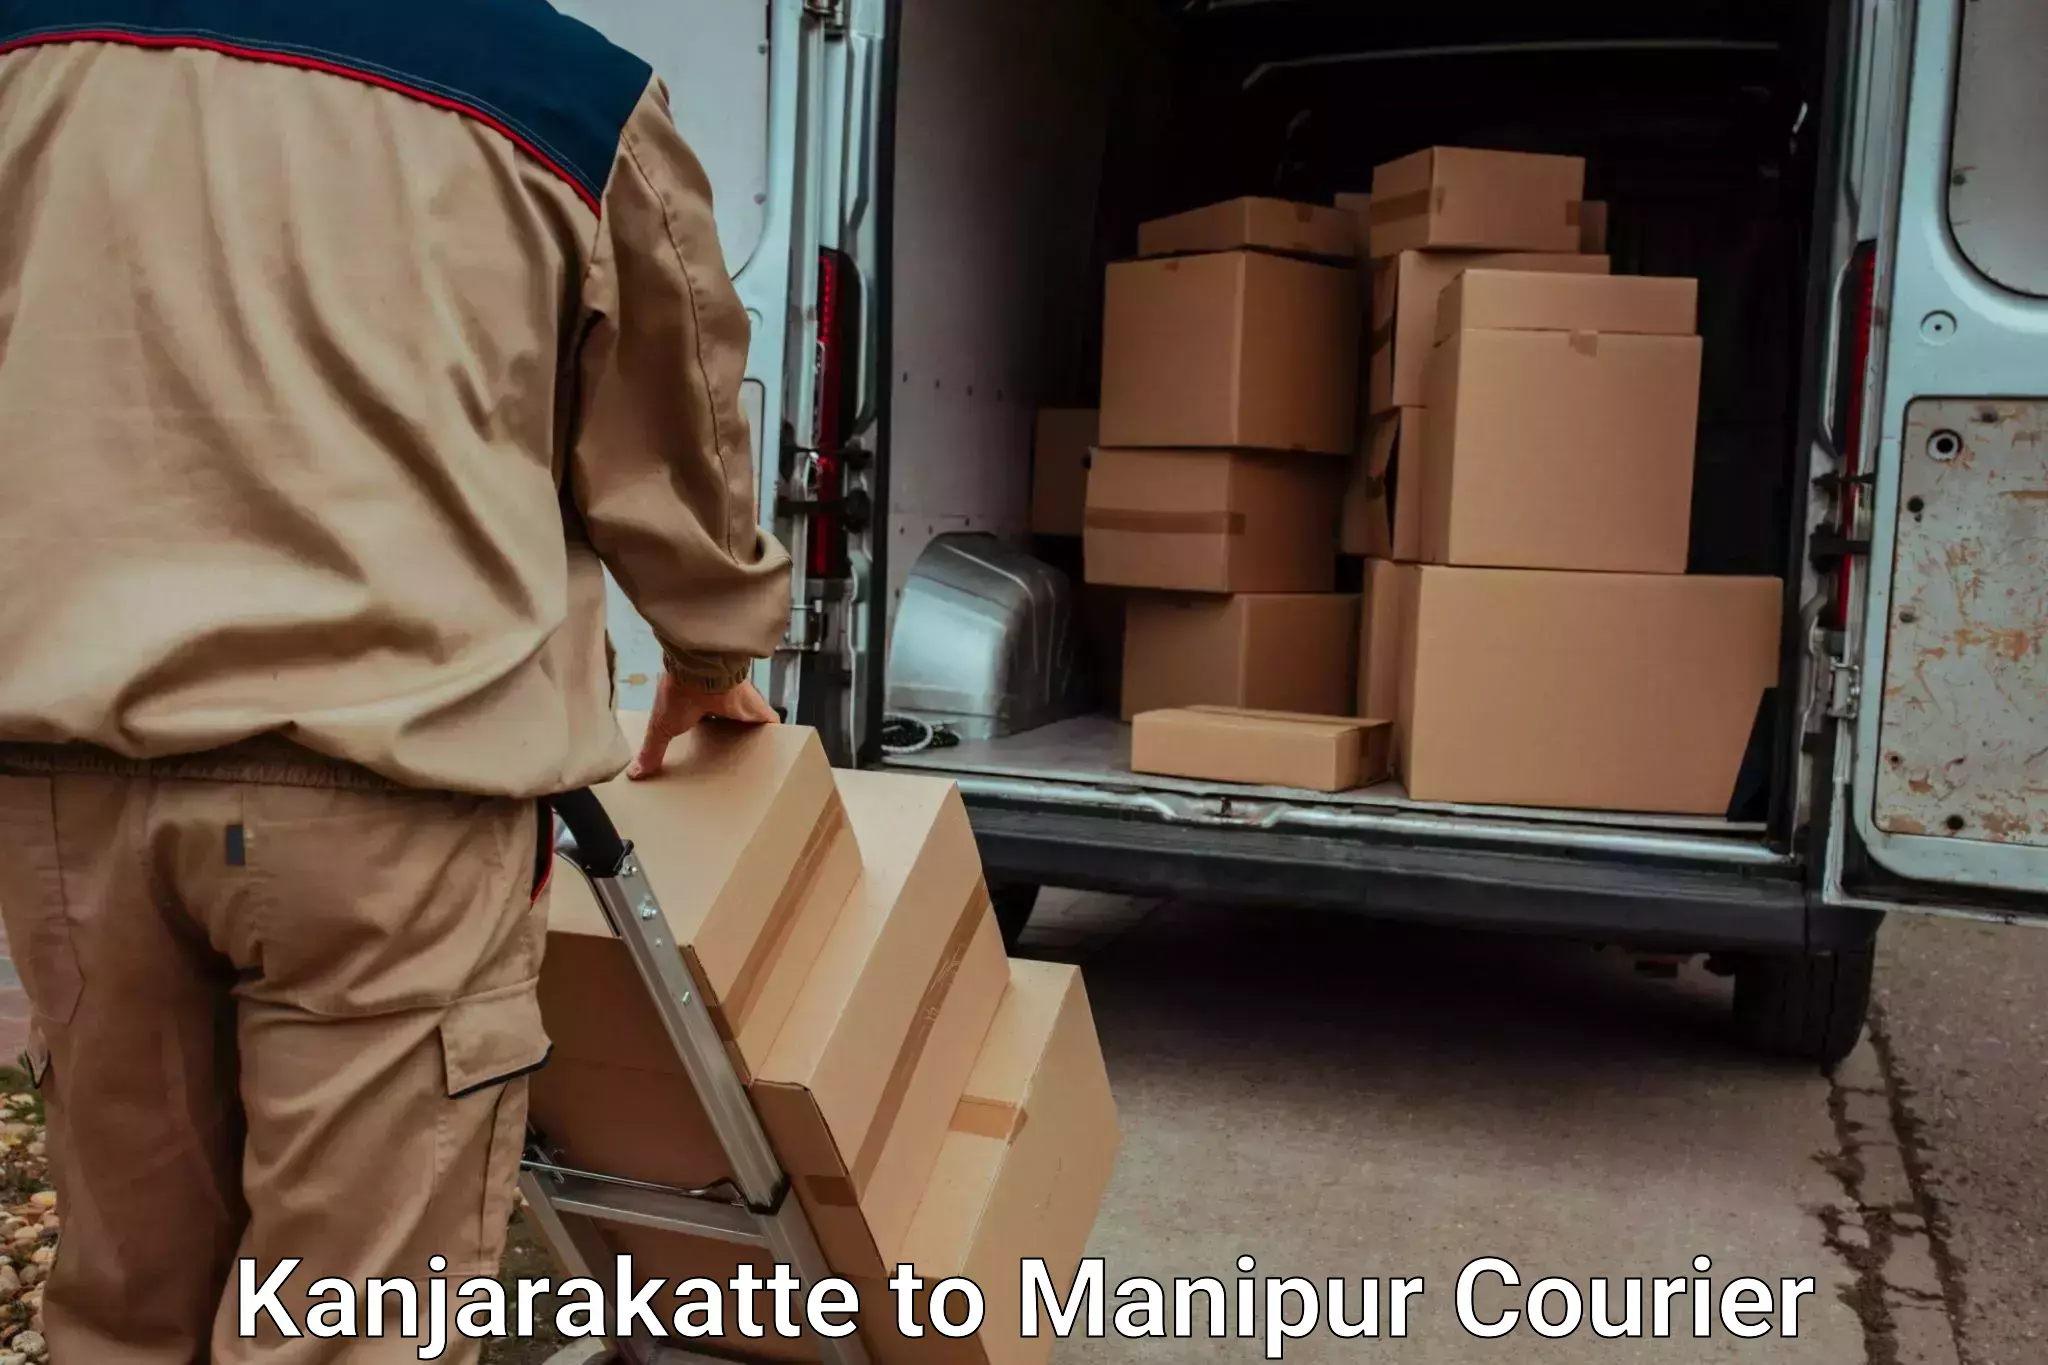 Same day luggage service Kanjarakatte to Manipur